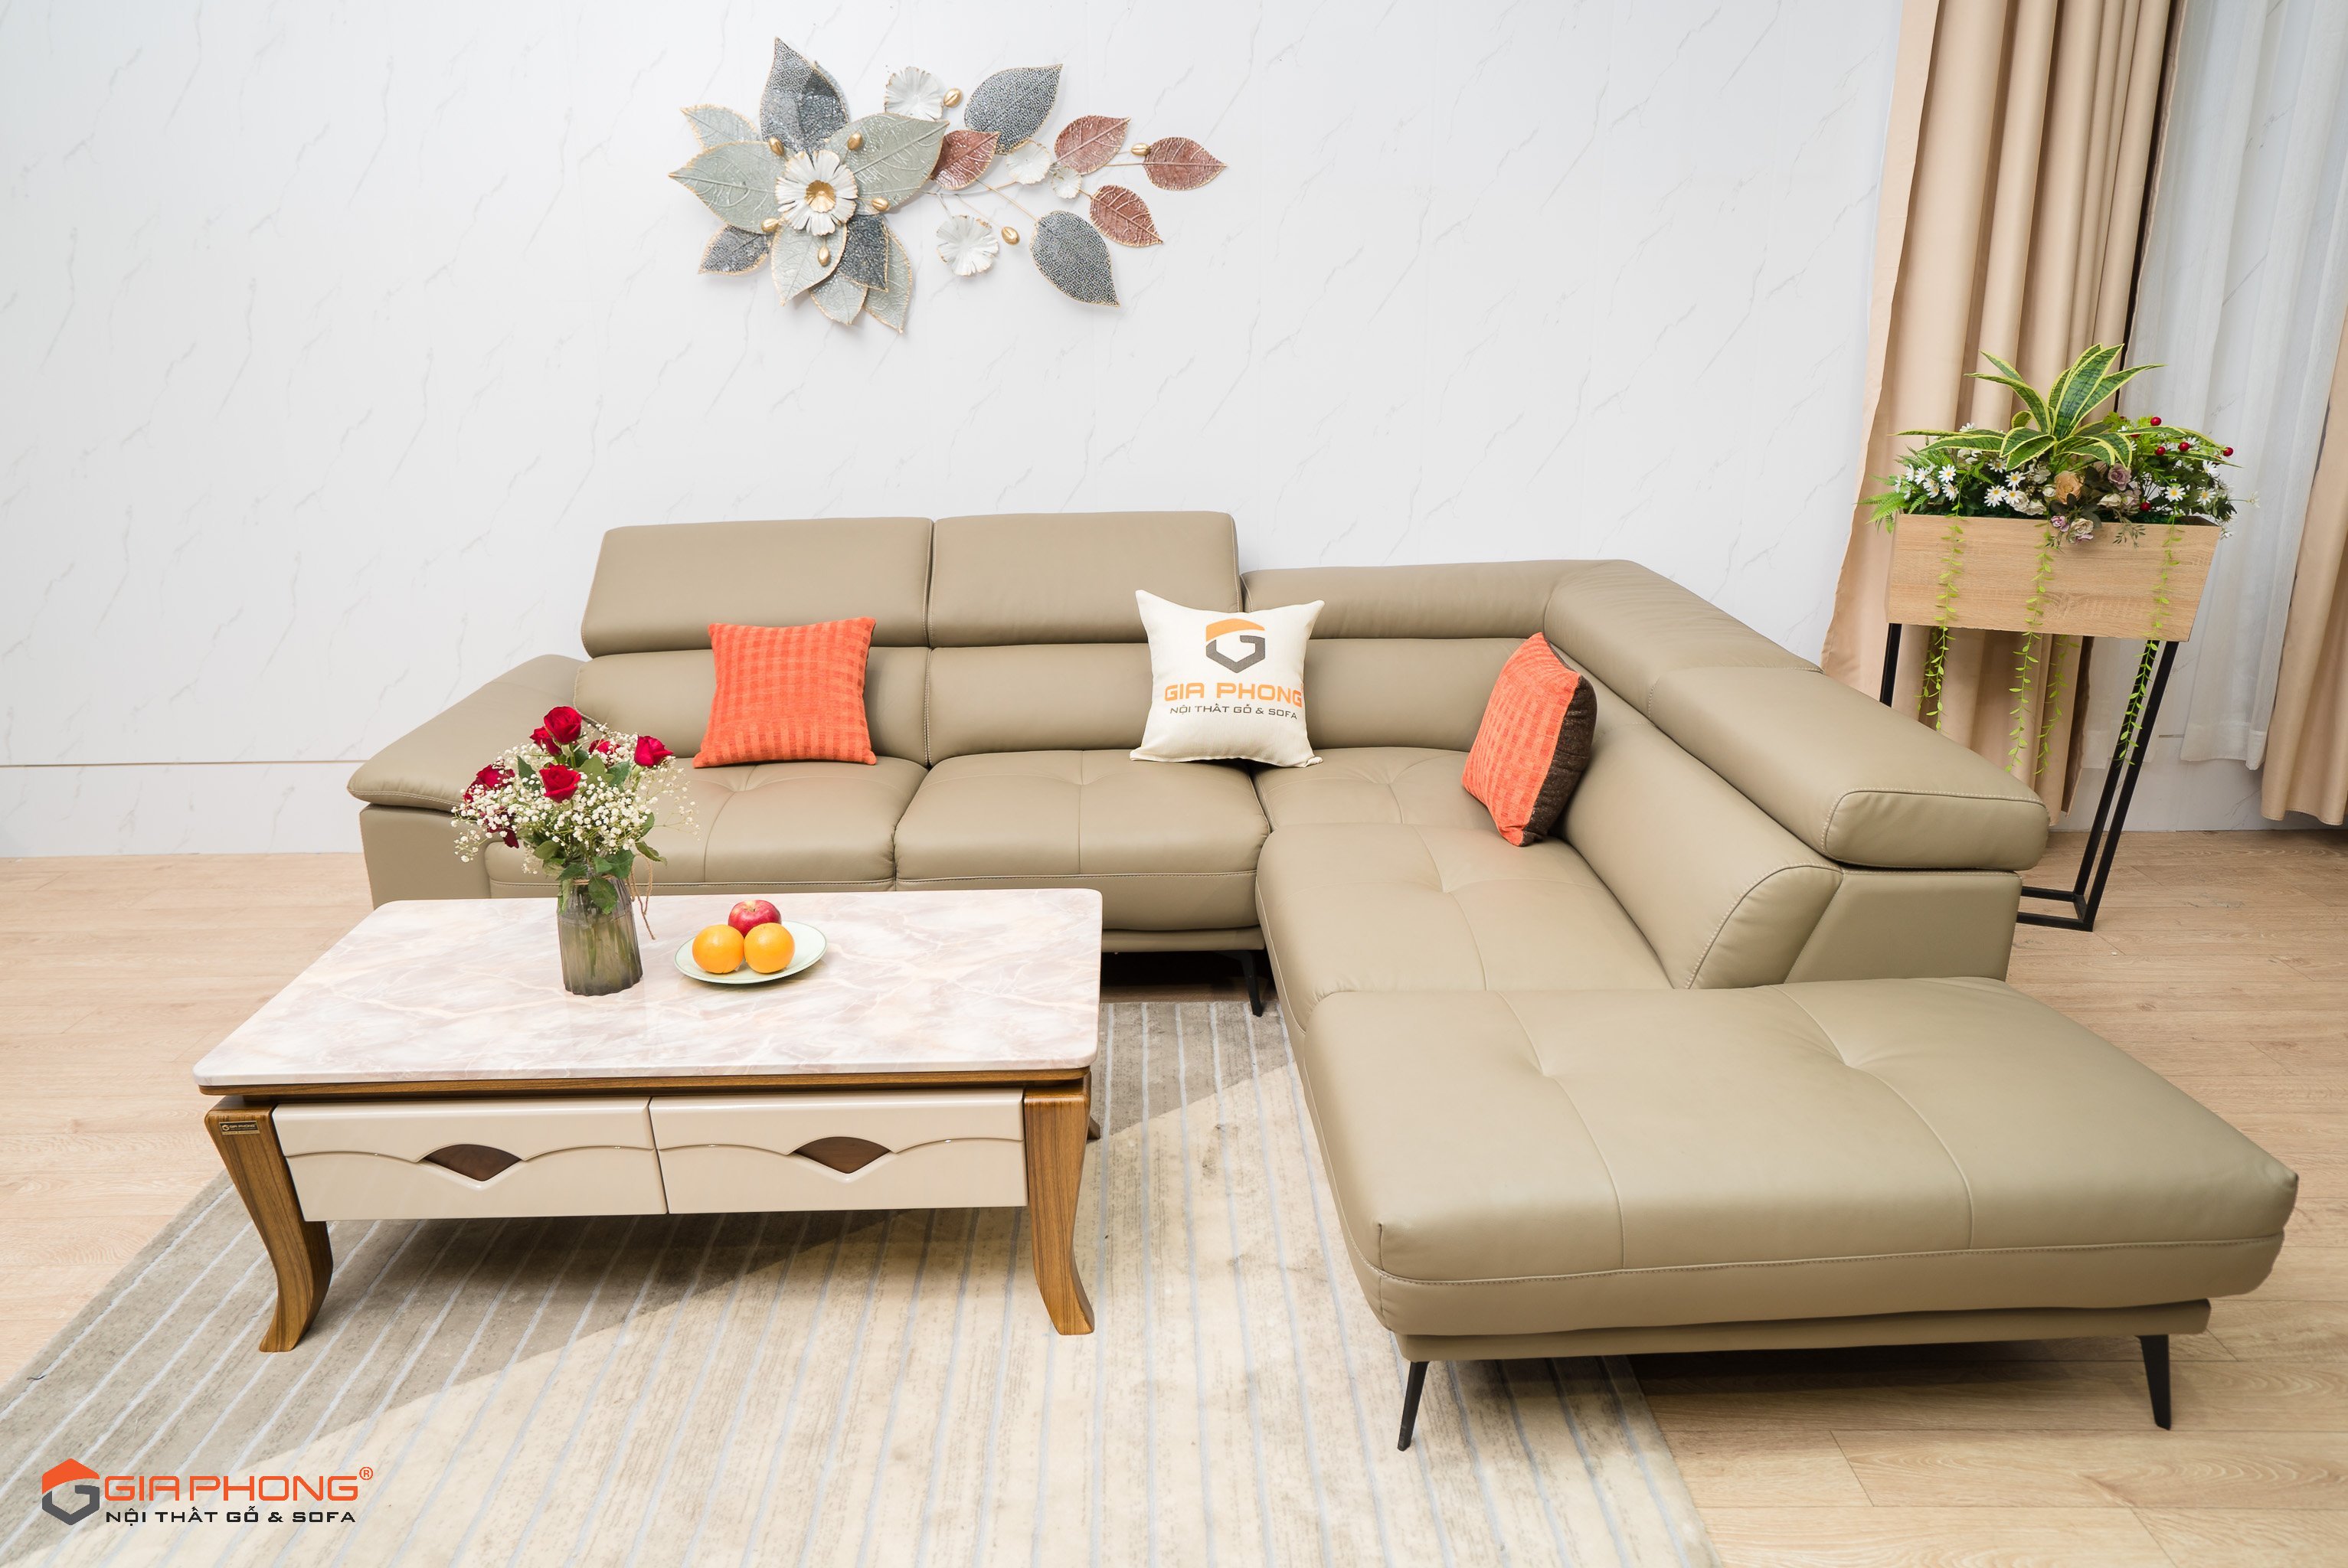 Làm sao để phòng khách của bạn trở nên đẹp hơn và sang trọng hơn? Đơn giản, hãy trang trí bằng một bộ bàn ghế sofa đẹp mắt. Tại Đà Nẵng, chúng tôi sẽ giúp bạn tìm kiếm được bộ bàn ghế sofa phù hợp với không gian của bạn nhất, từ kiểu dáng đến màu sắc, và với chất lượng đảm bảo.